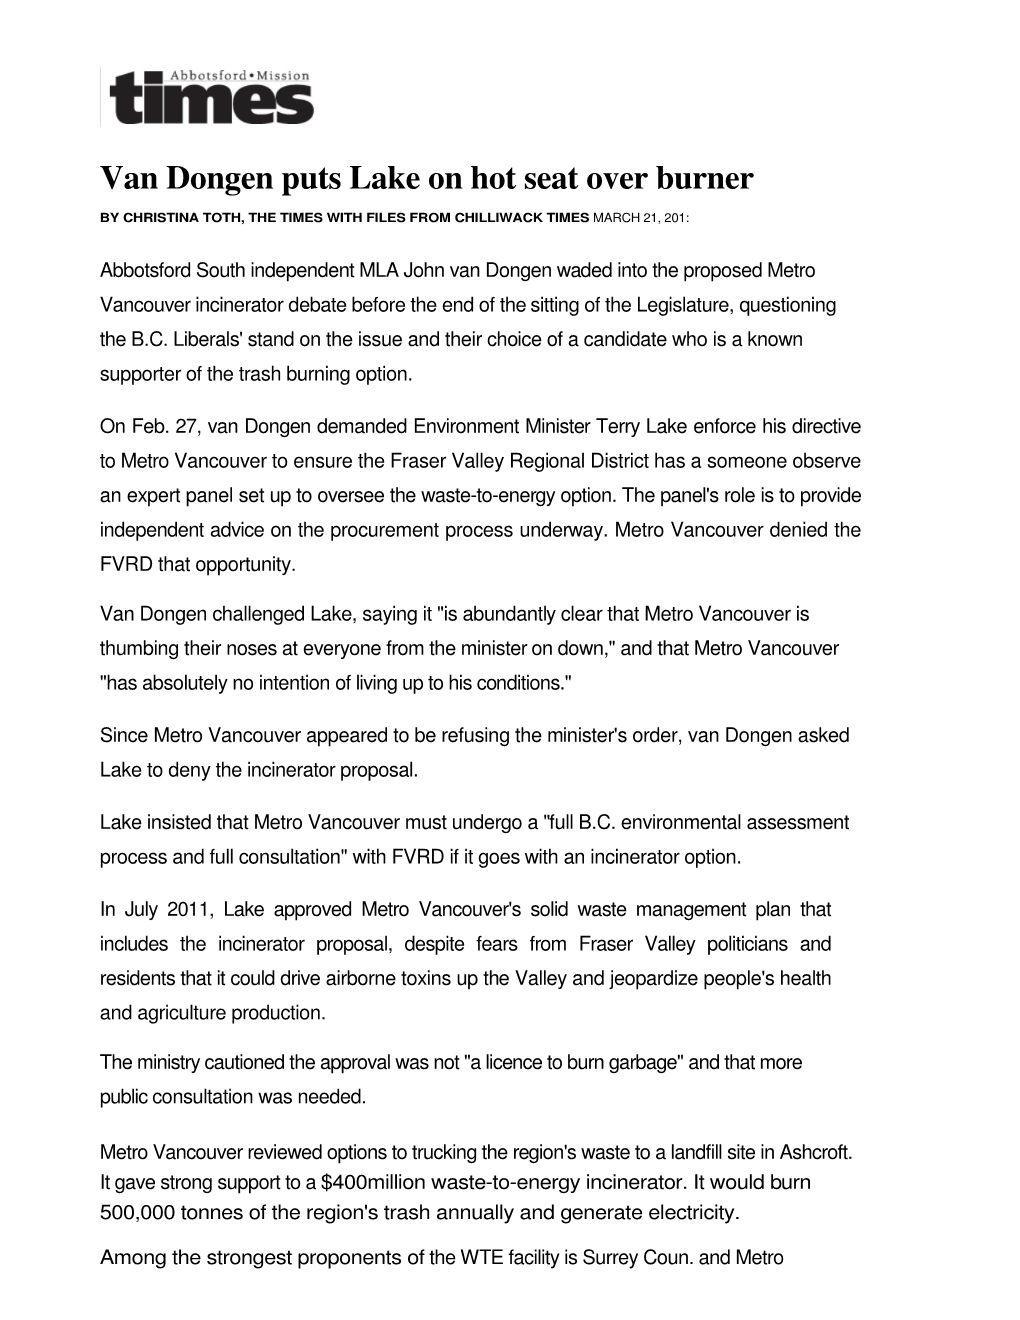 Van Dongen Puts Lake on Hot Seat Over Burner